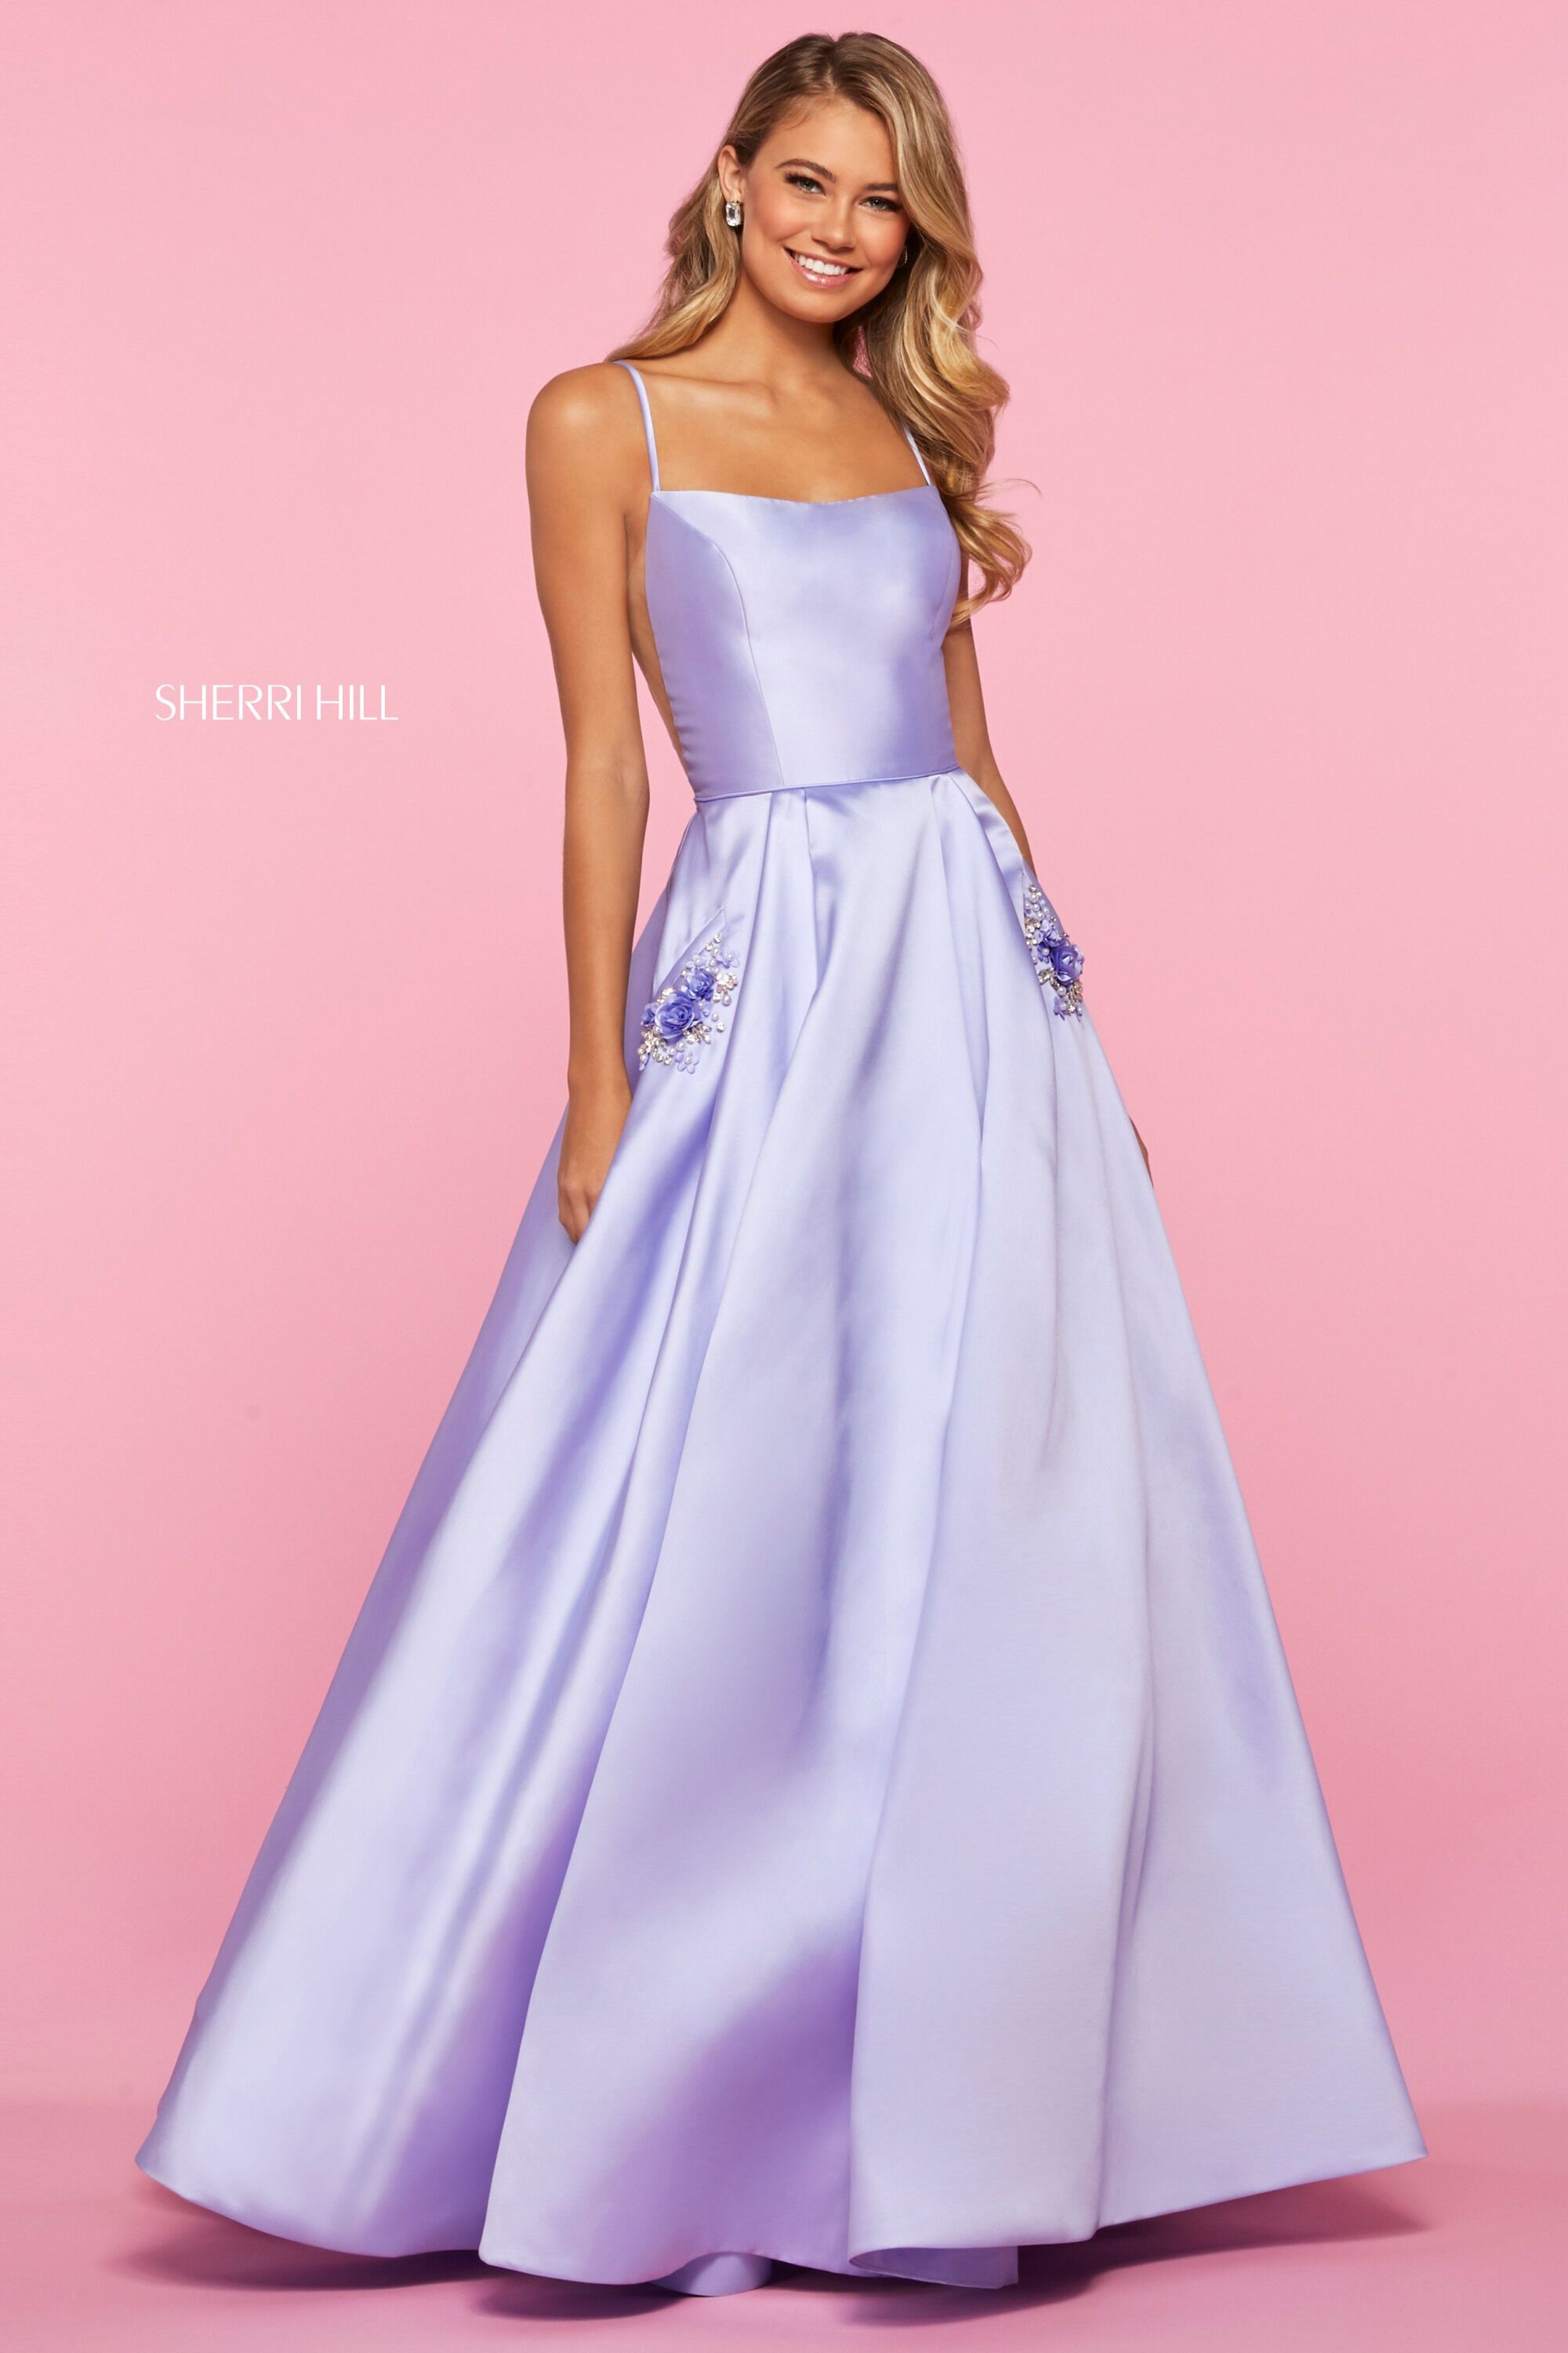 sherri hill purple prom dress